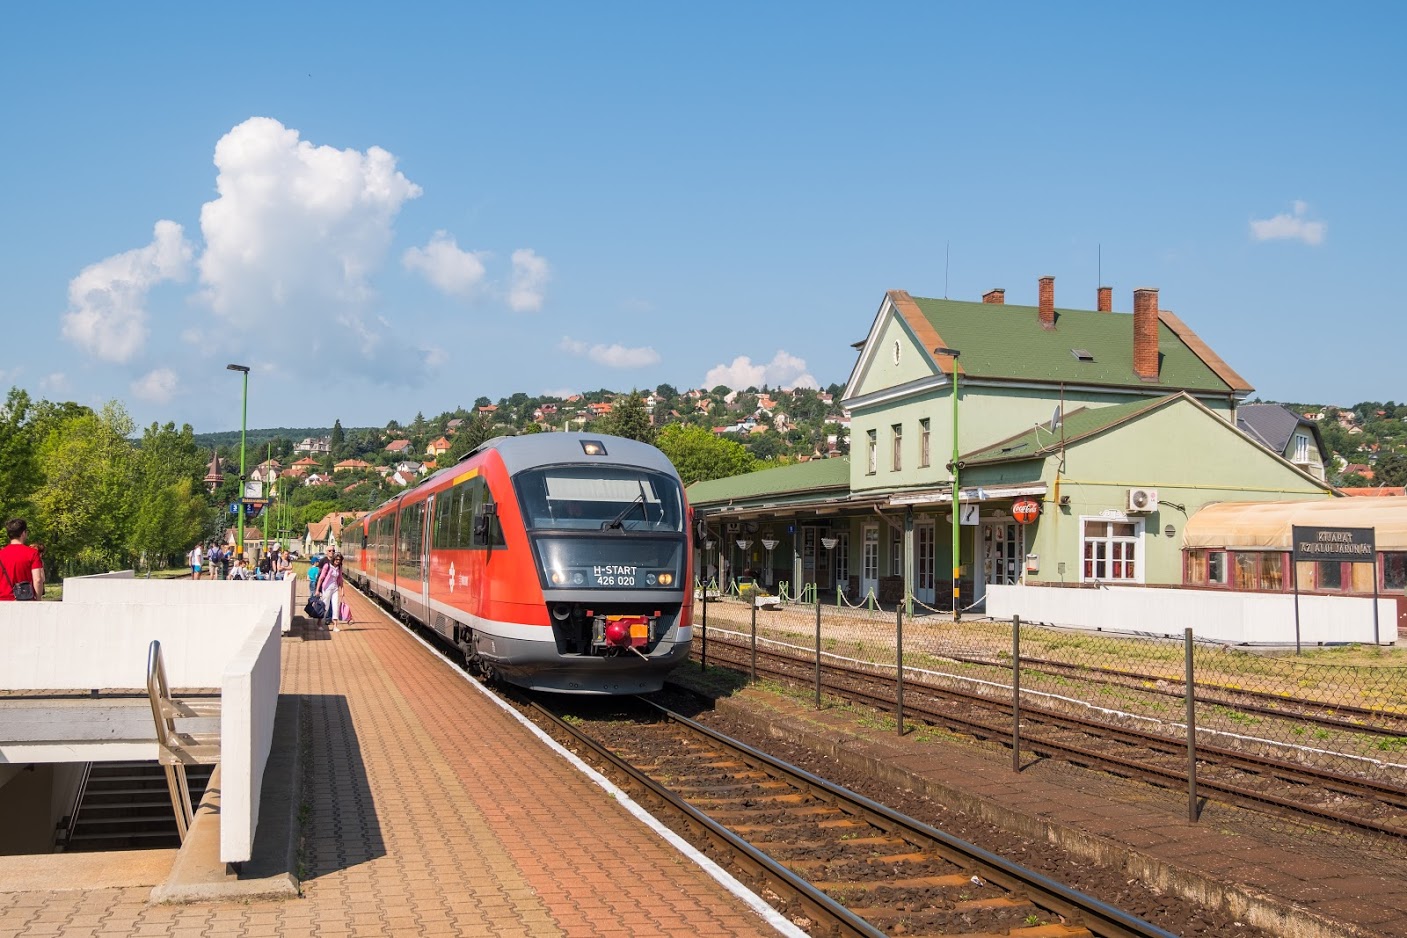 Győr, Celldömölk, Keszthely és Balatonszentgyörgy között kétóránként InterRégió-vonatok fognak közlekedni, korszerű, alacsonypadlós, légkondicionált Desiro-motorvonatokkal